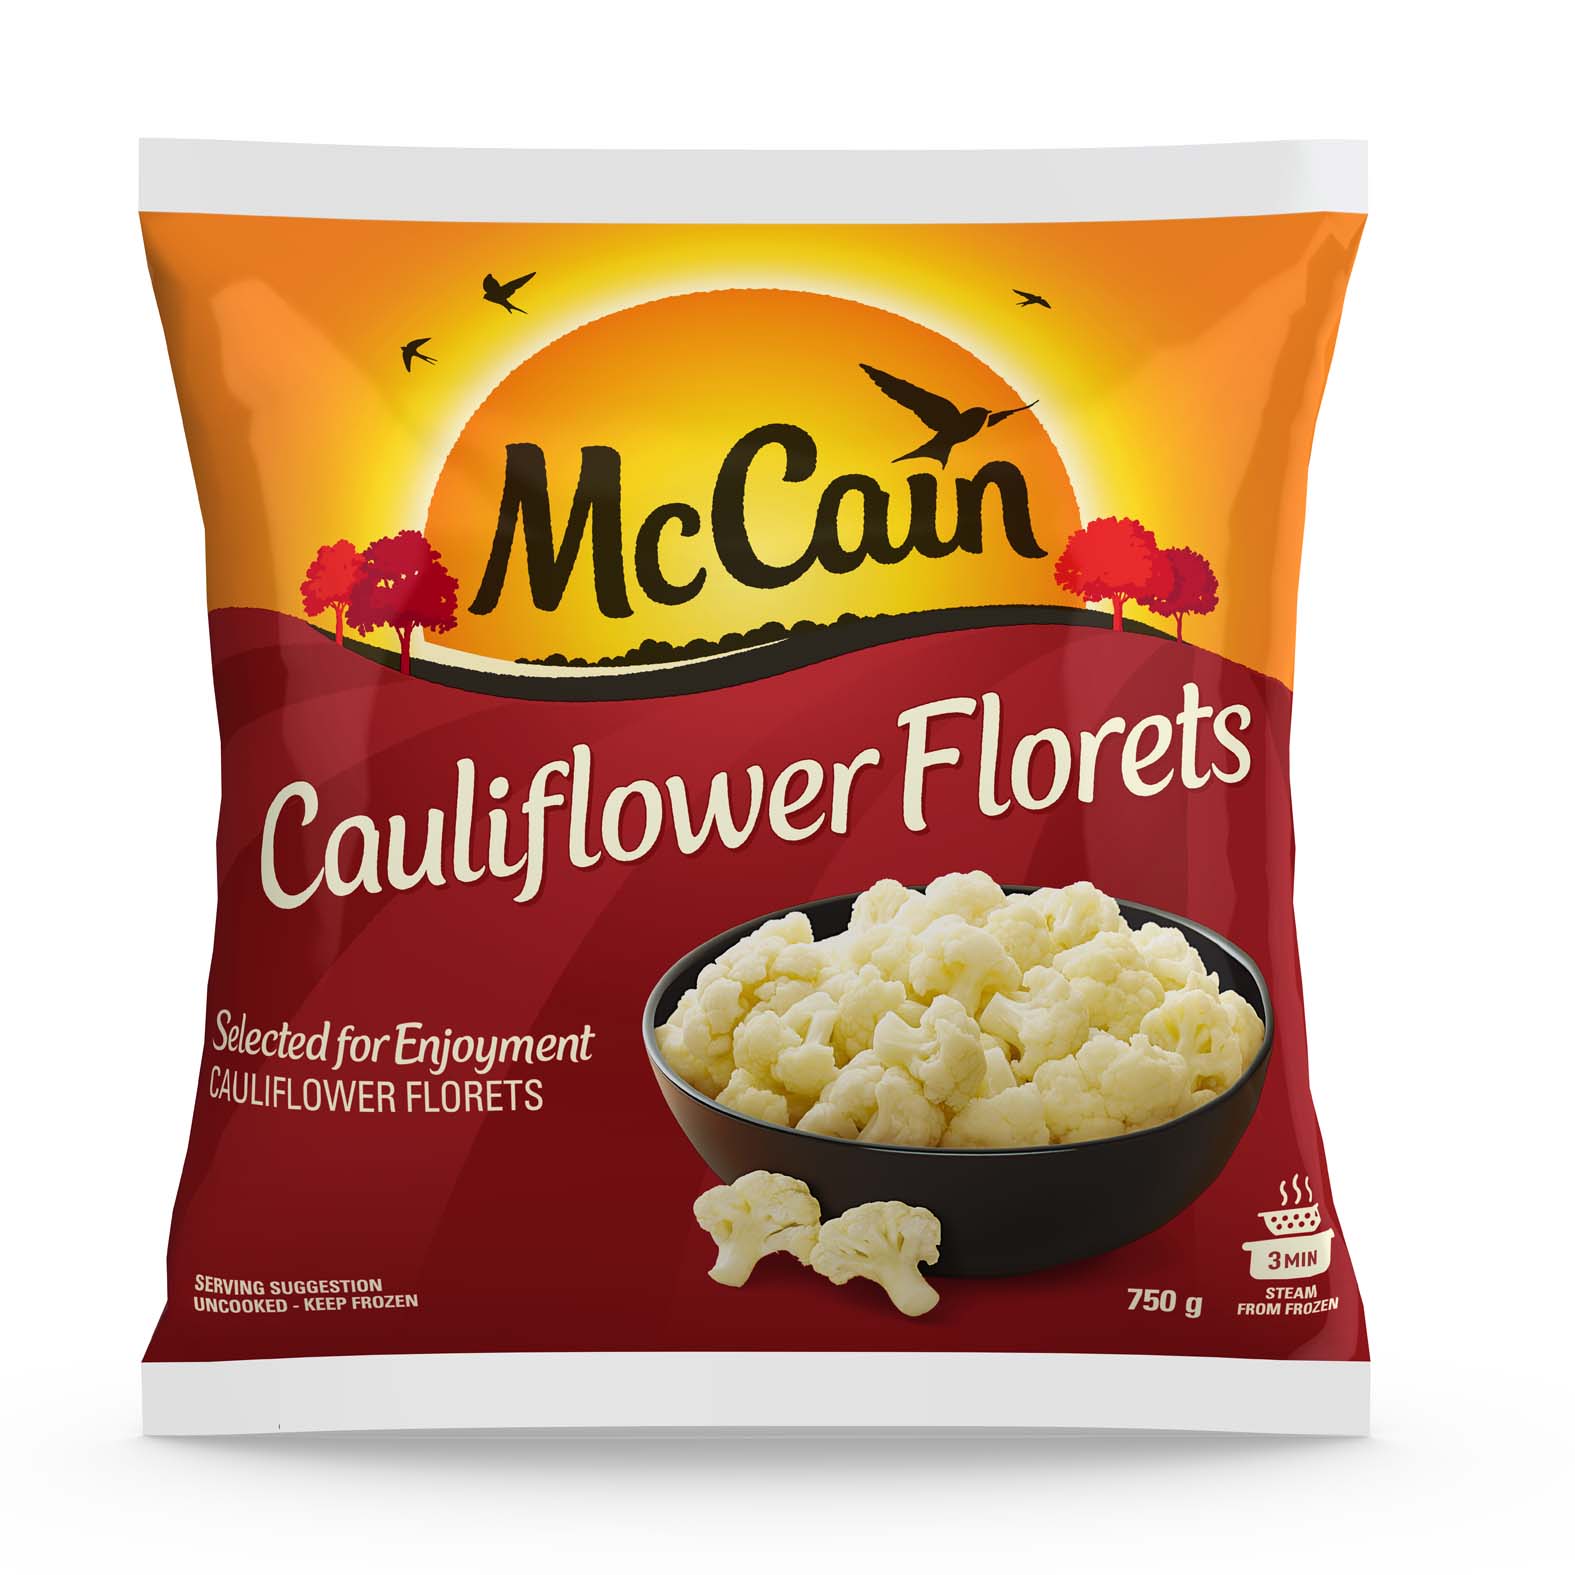 Cauliflower Florets 750g